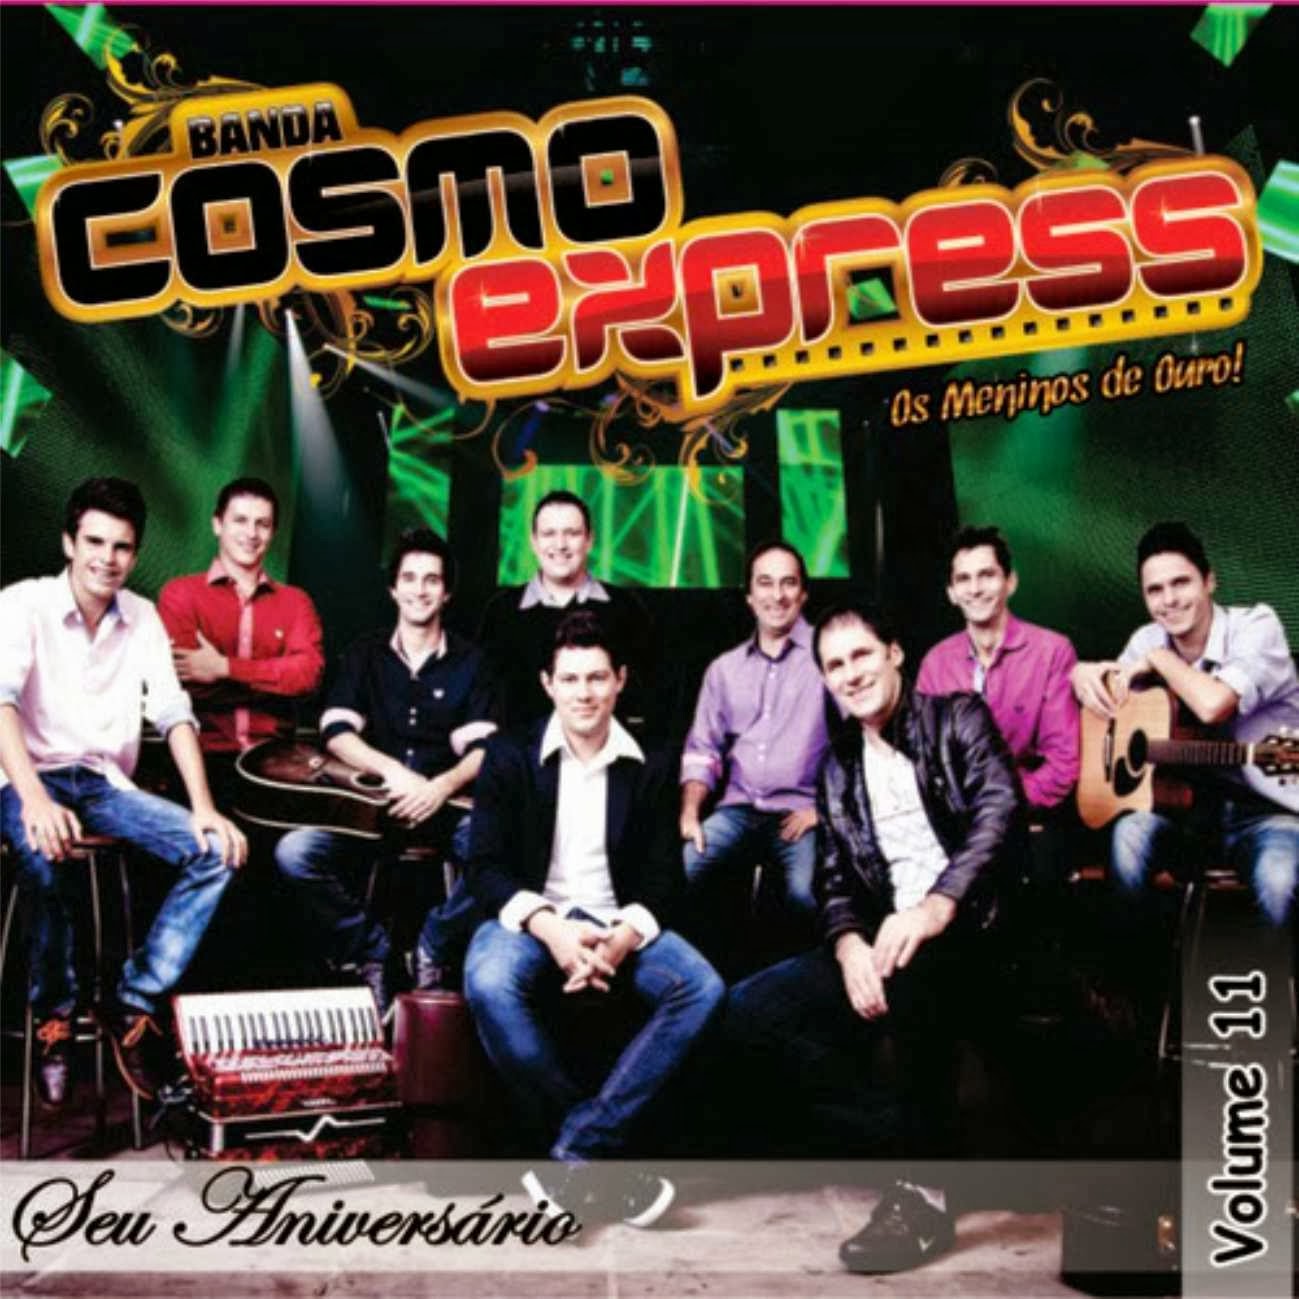 Cosmo Express - Vol. 11 - Seu Aniversário